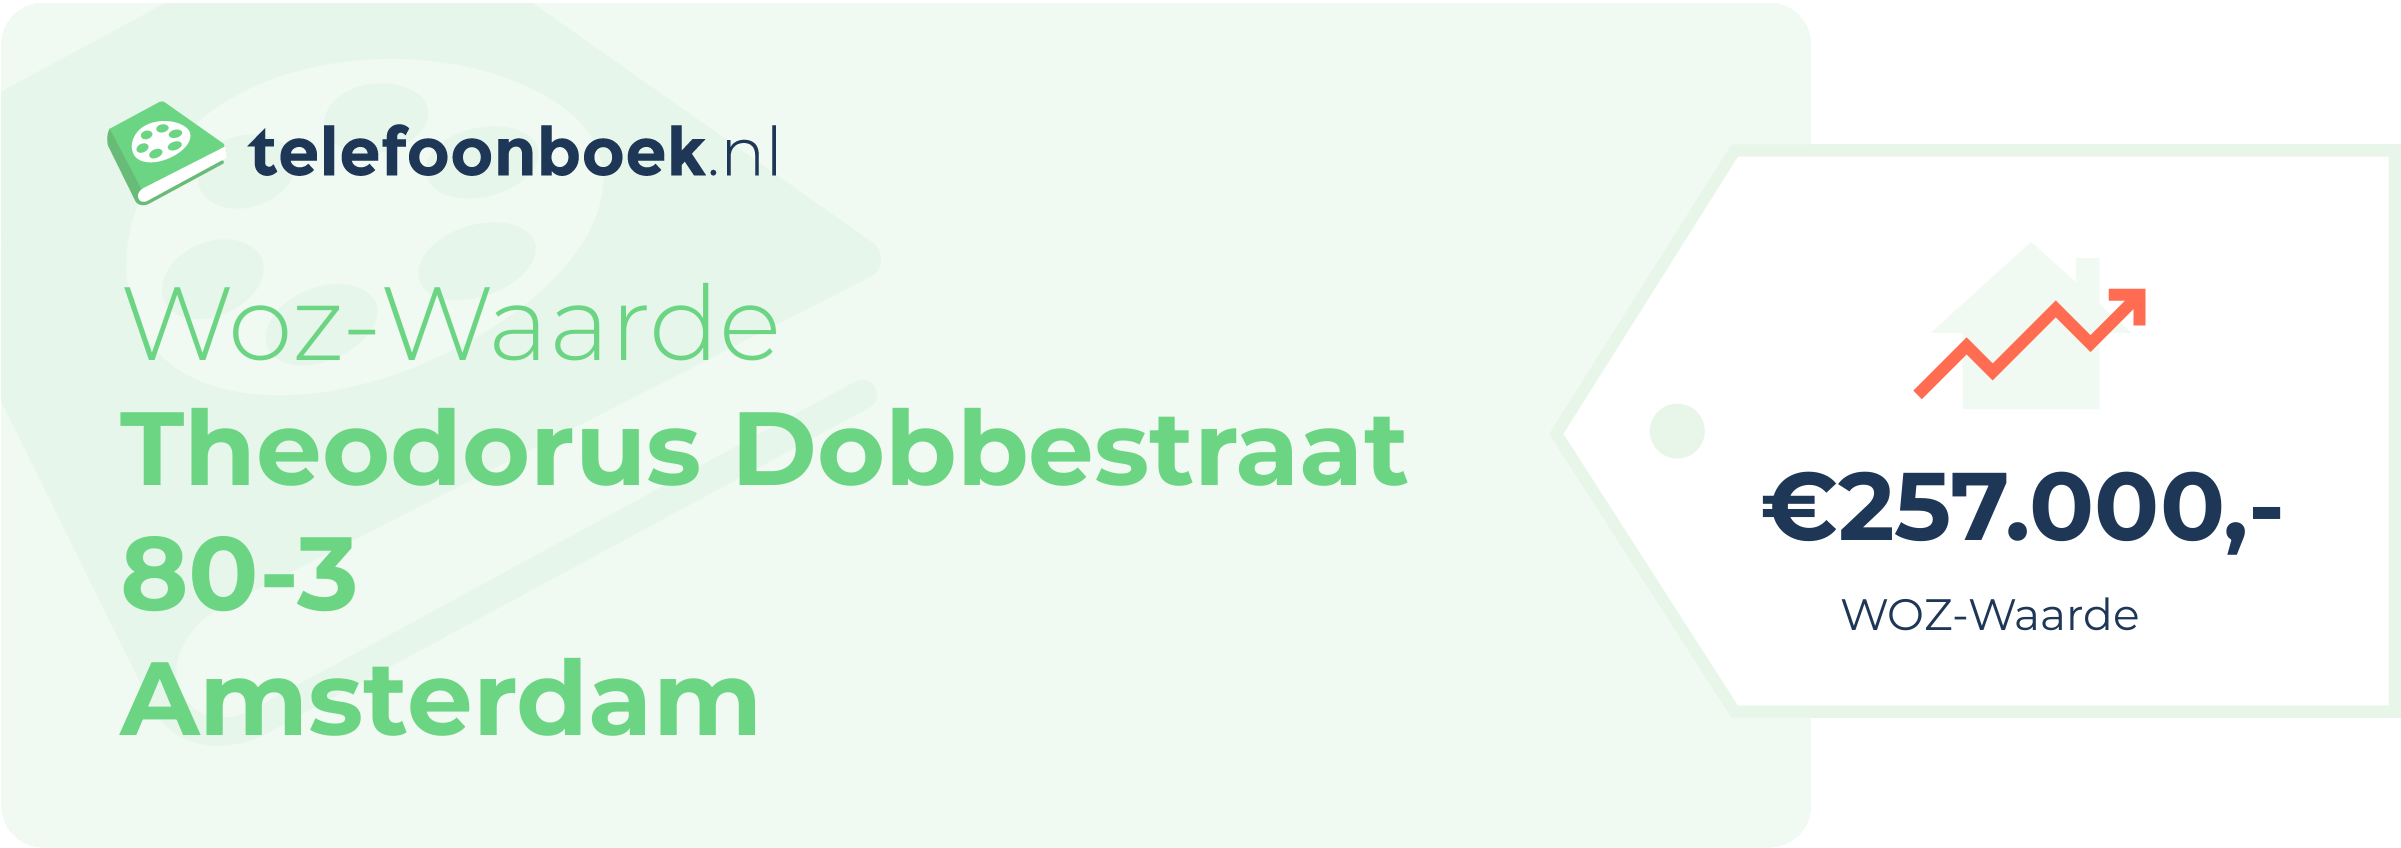 WOZ-waarde Theodorus Dobbestraat 80-3 Amsterdam